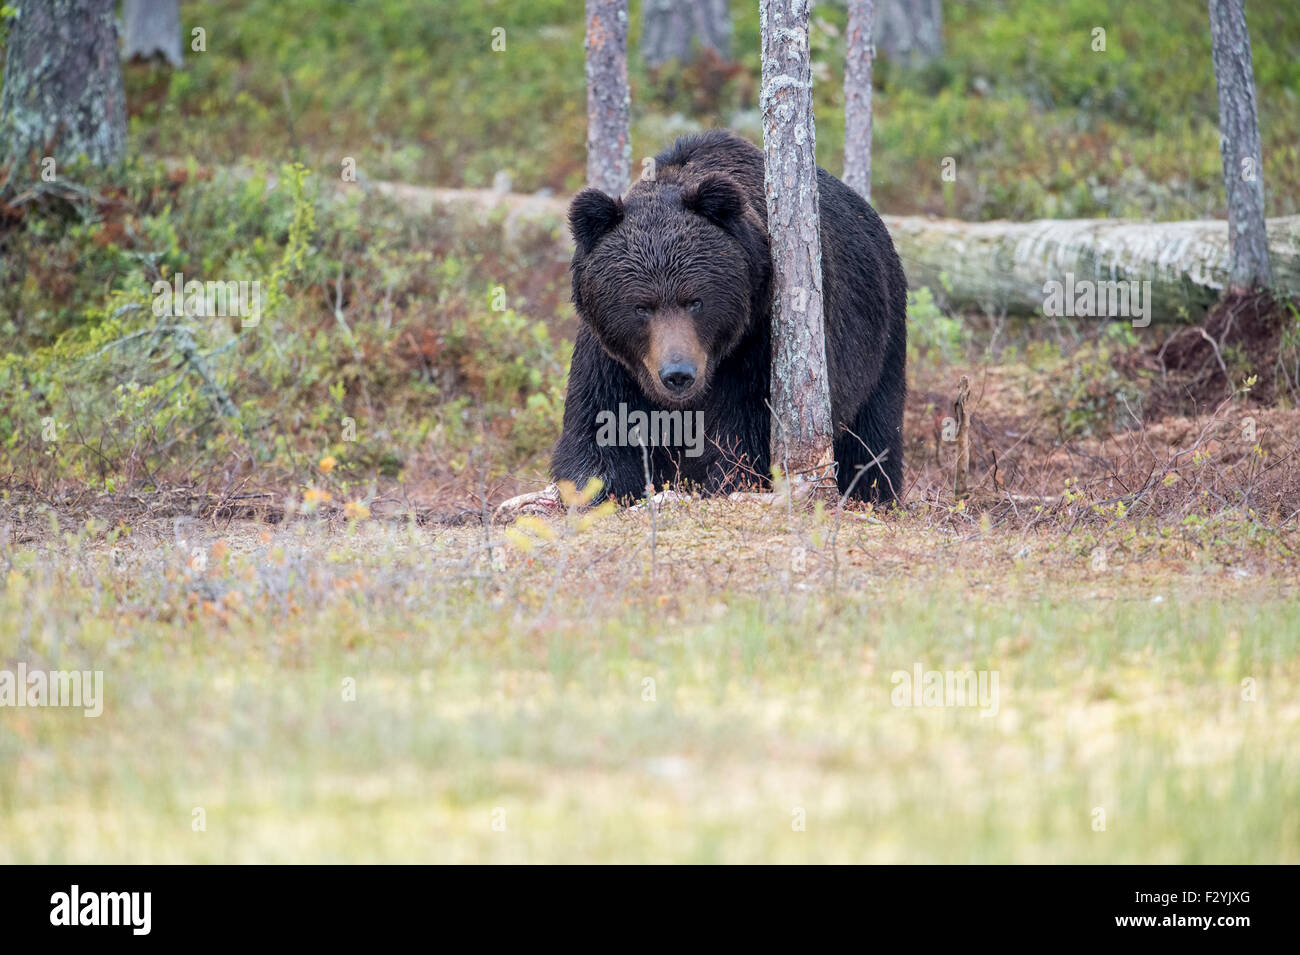 Ours brun eurasien Ursus arctos arctos émerge de la forêt sauvage de la Finlande, près de la frontière russe. Banque D'Images